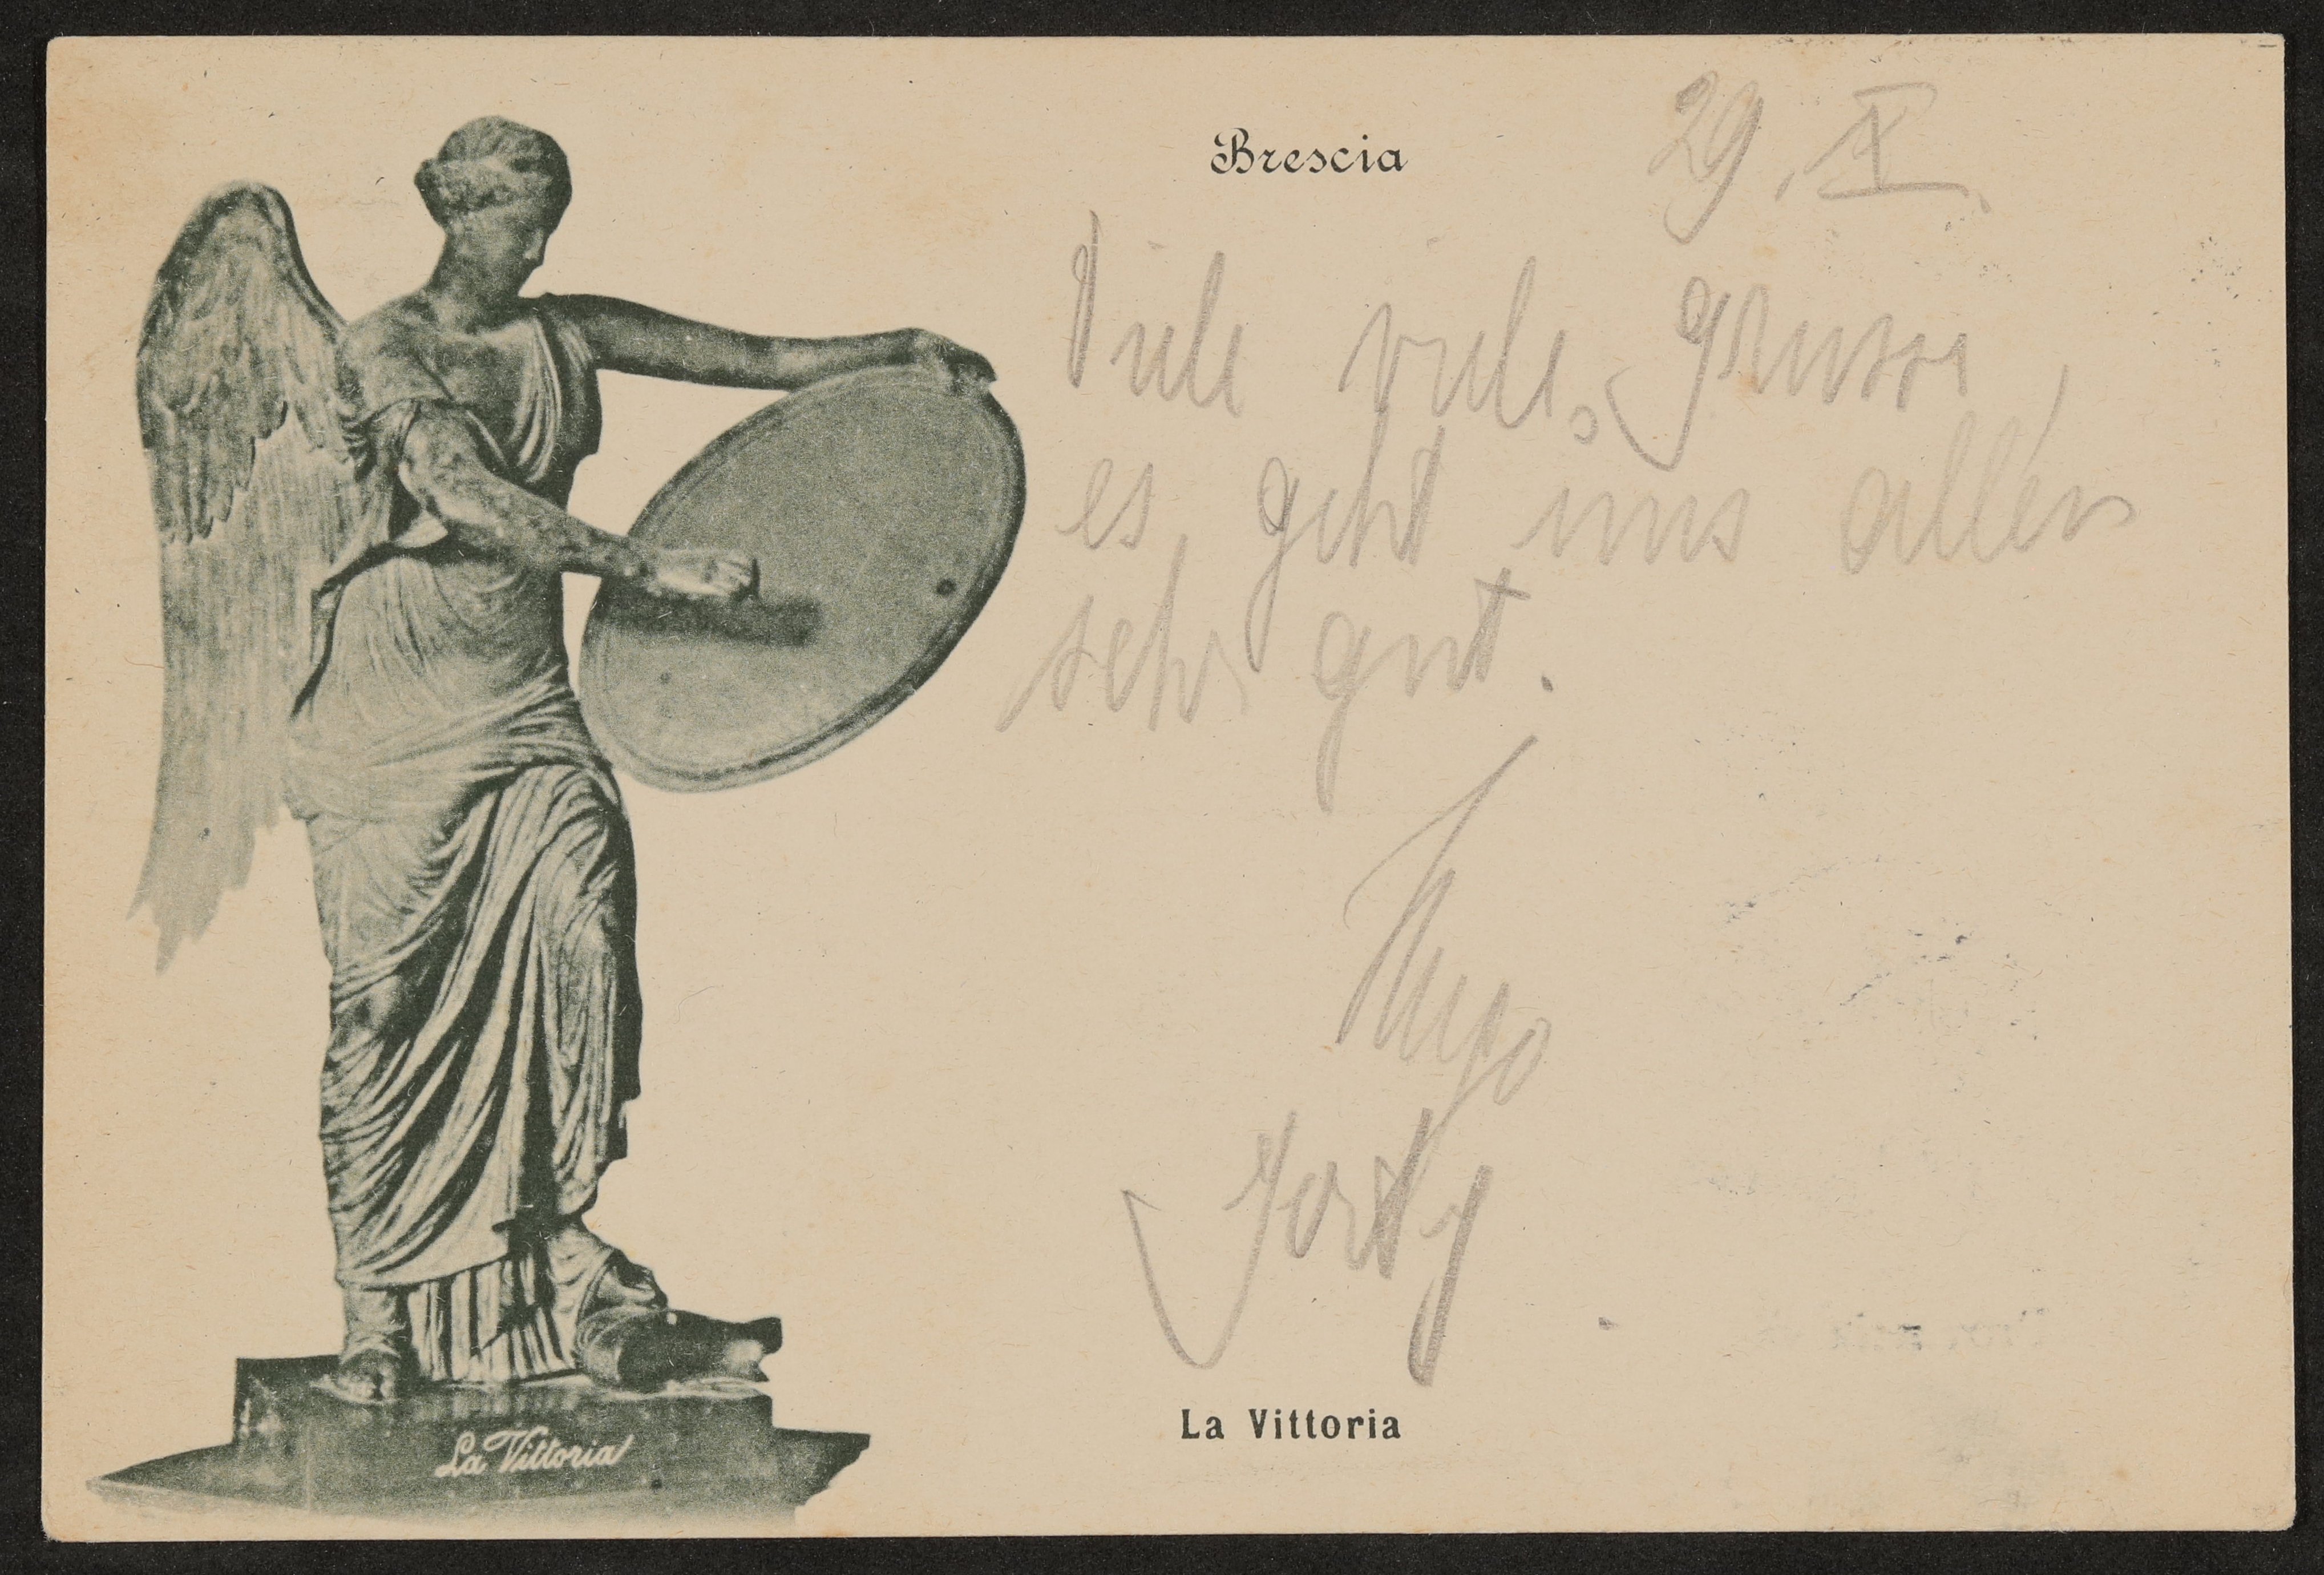 Ansichtskarte der Statue "La Vittoria" (Brescia) von Hugo und Gerty von Hofmannsthal an Anna von Hofmannsthal VERMISST (Freies Deutsches Hochstift / Frankfurter Goethe-Museum Public Domain Mark)